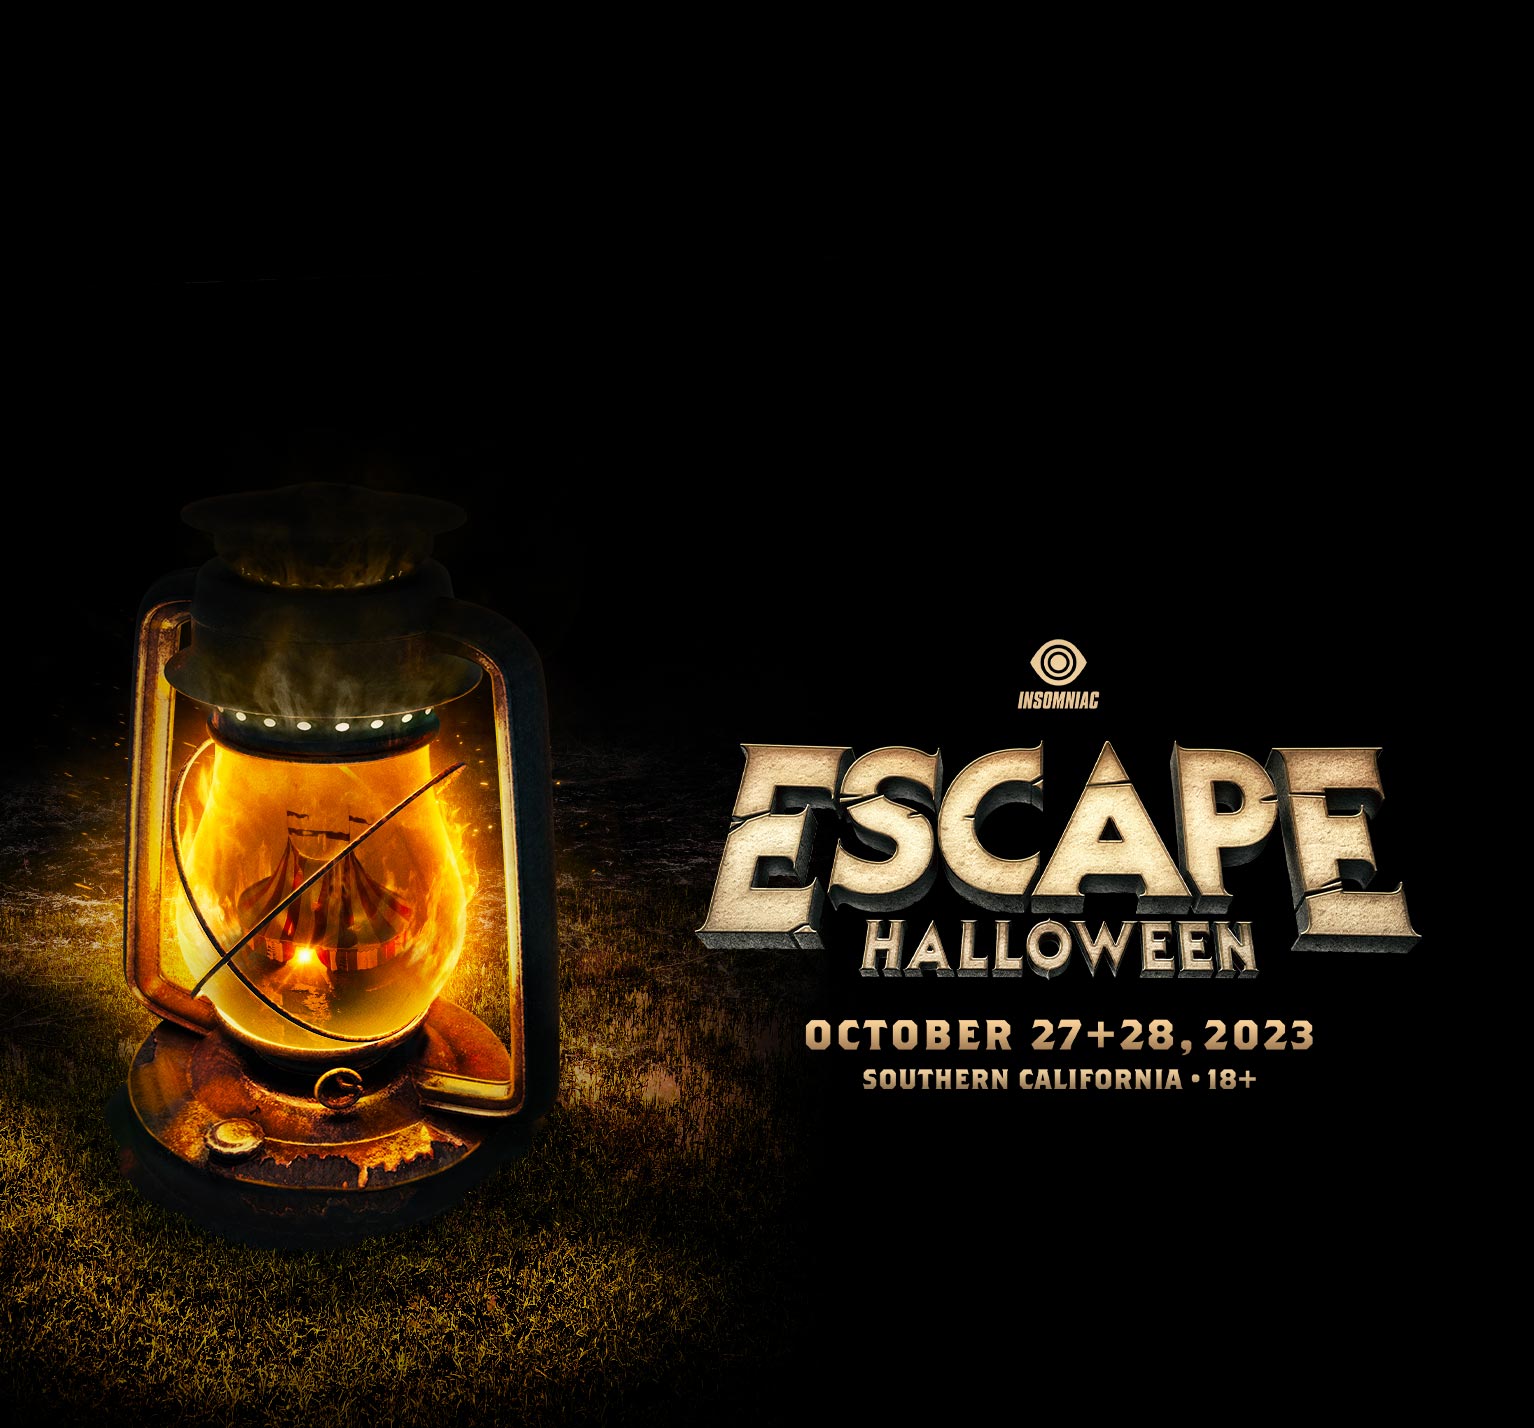 Escape Halloween October 27+28, 2023 NOS Events Center